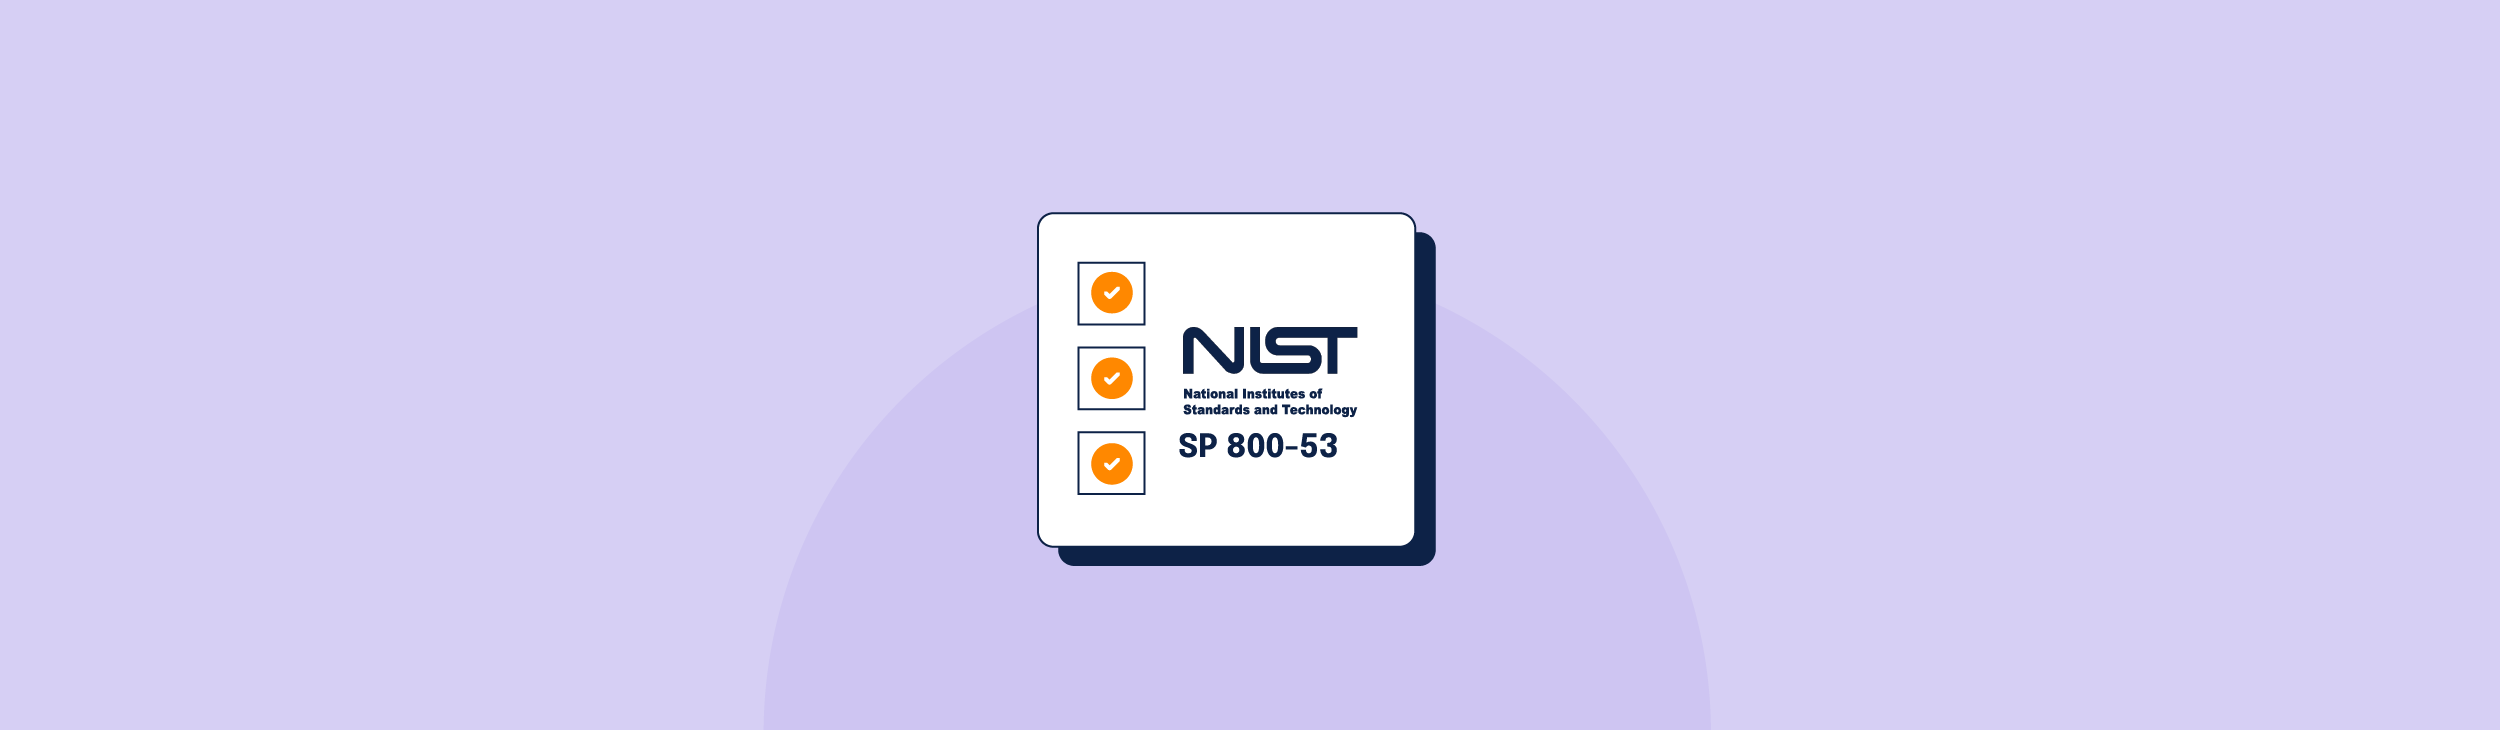 NIST SP 800-53 Checklist